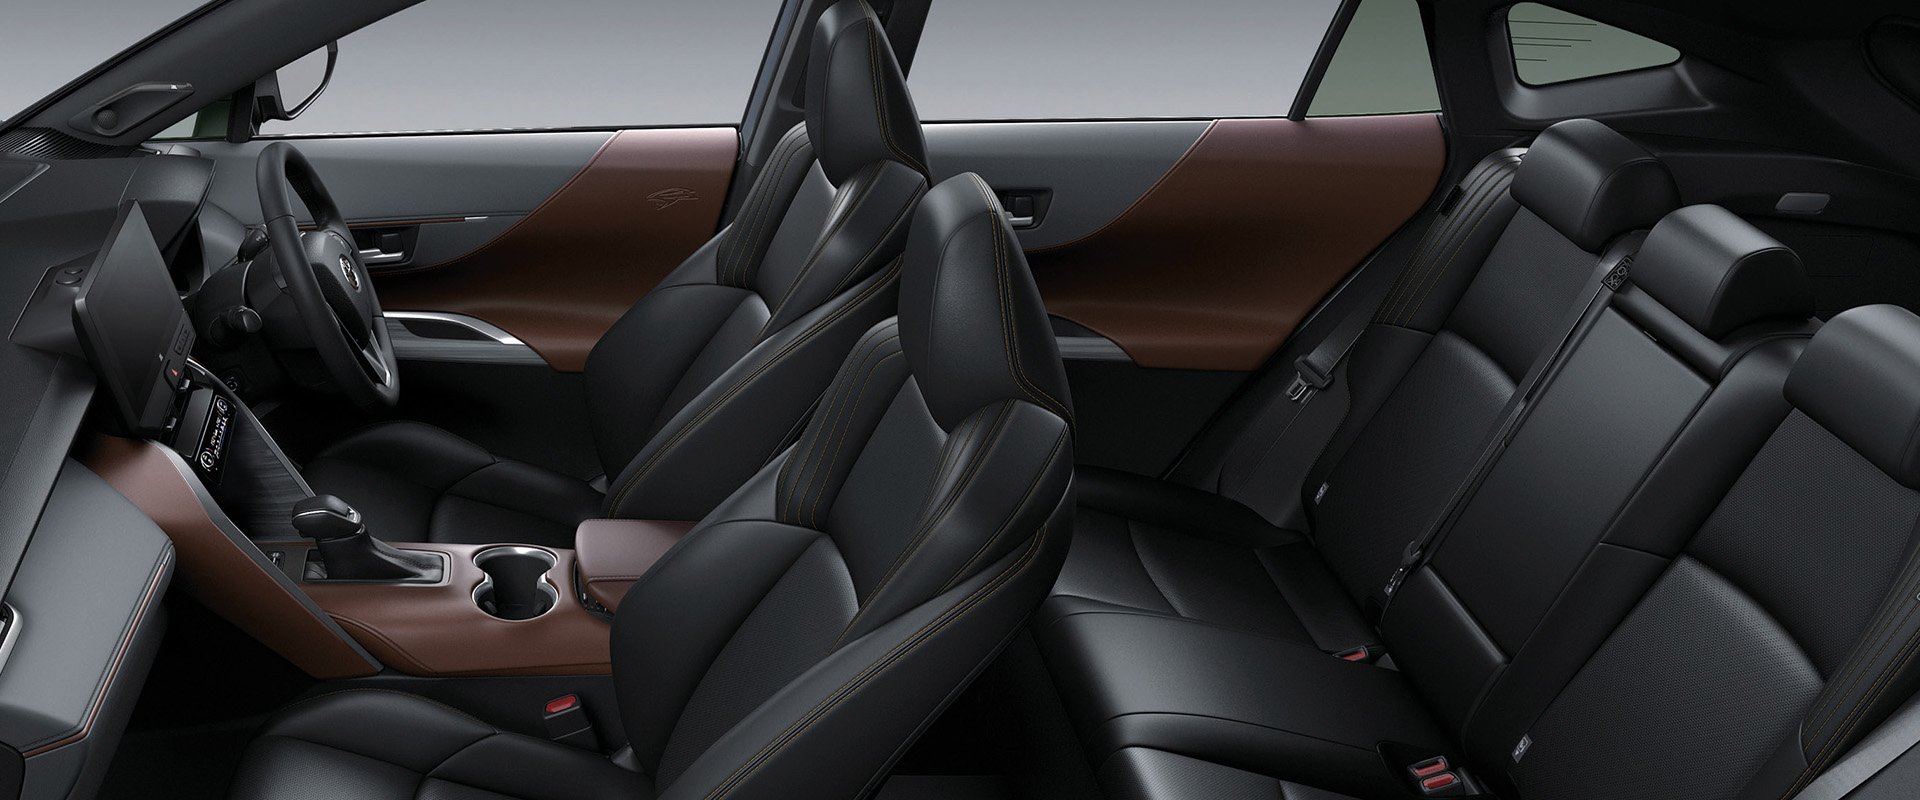 Toyota Harrier interior - Seats